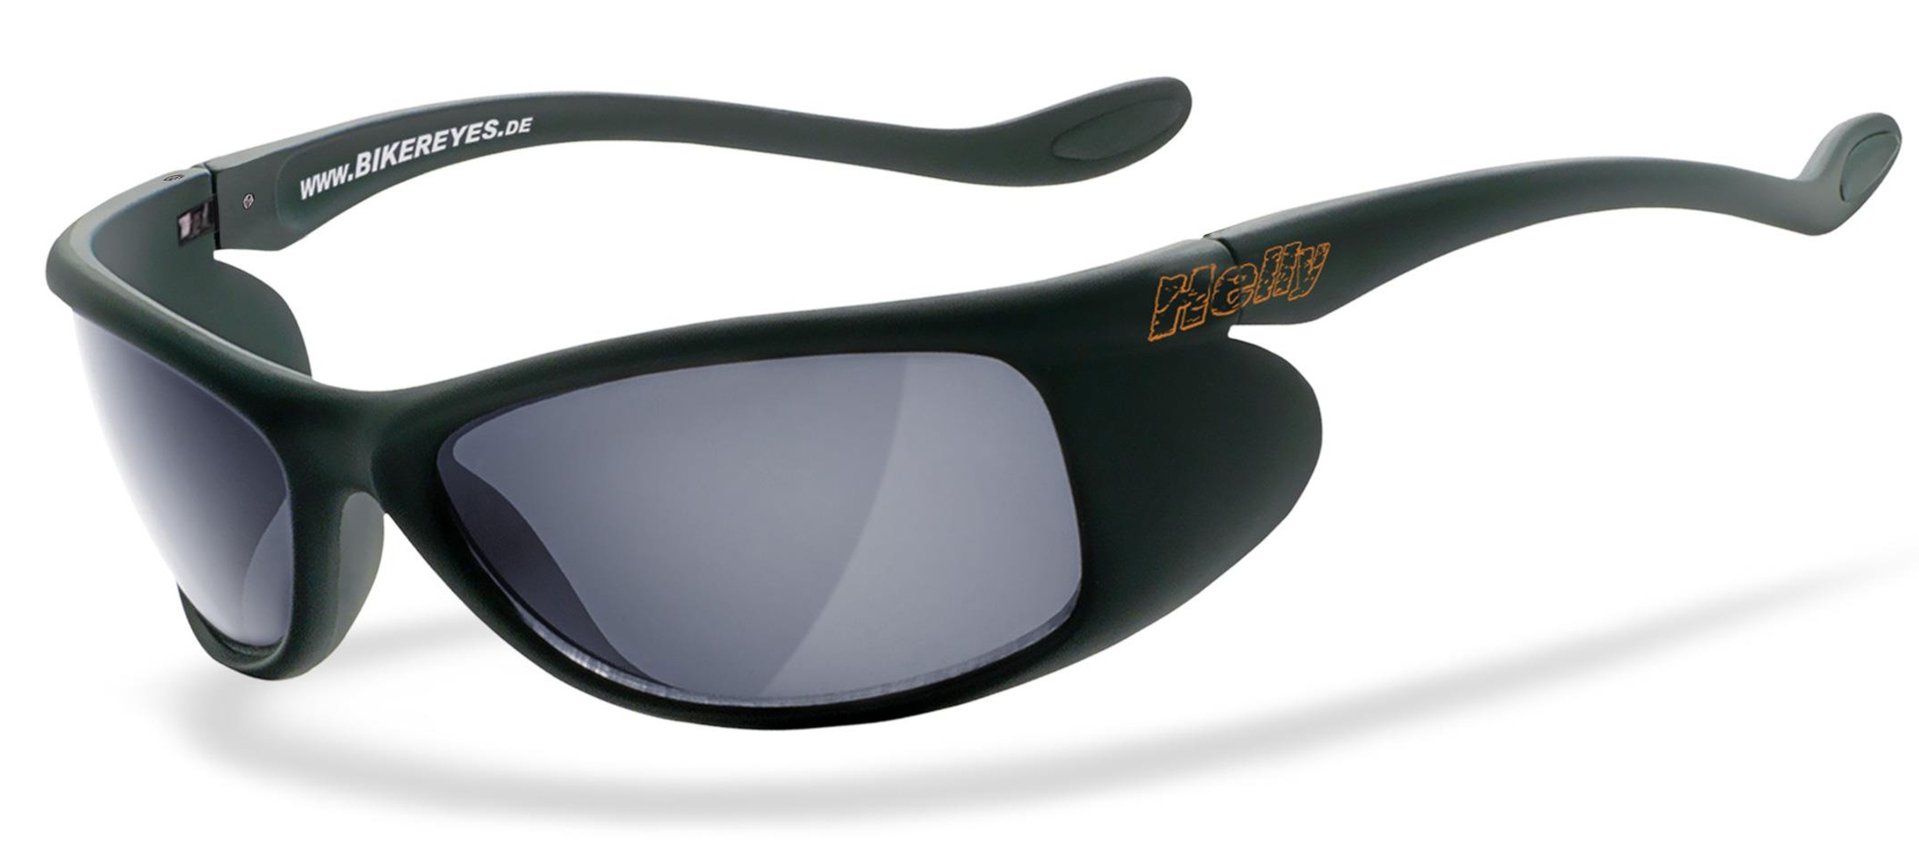 солнцезащитные очки 100% синий мультиколор Очки Helly Bikereyes Top Speed 4 солнцезащитные, бледно синий